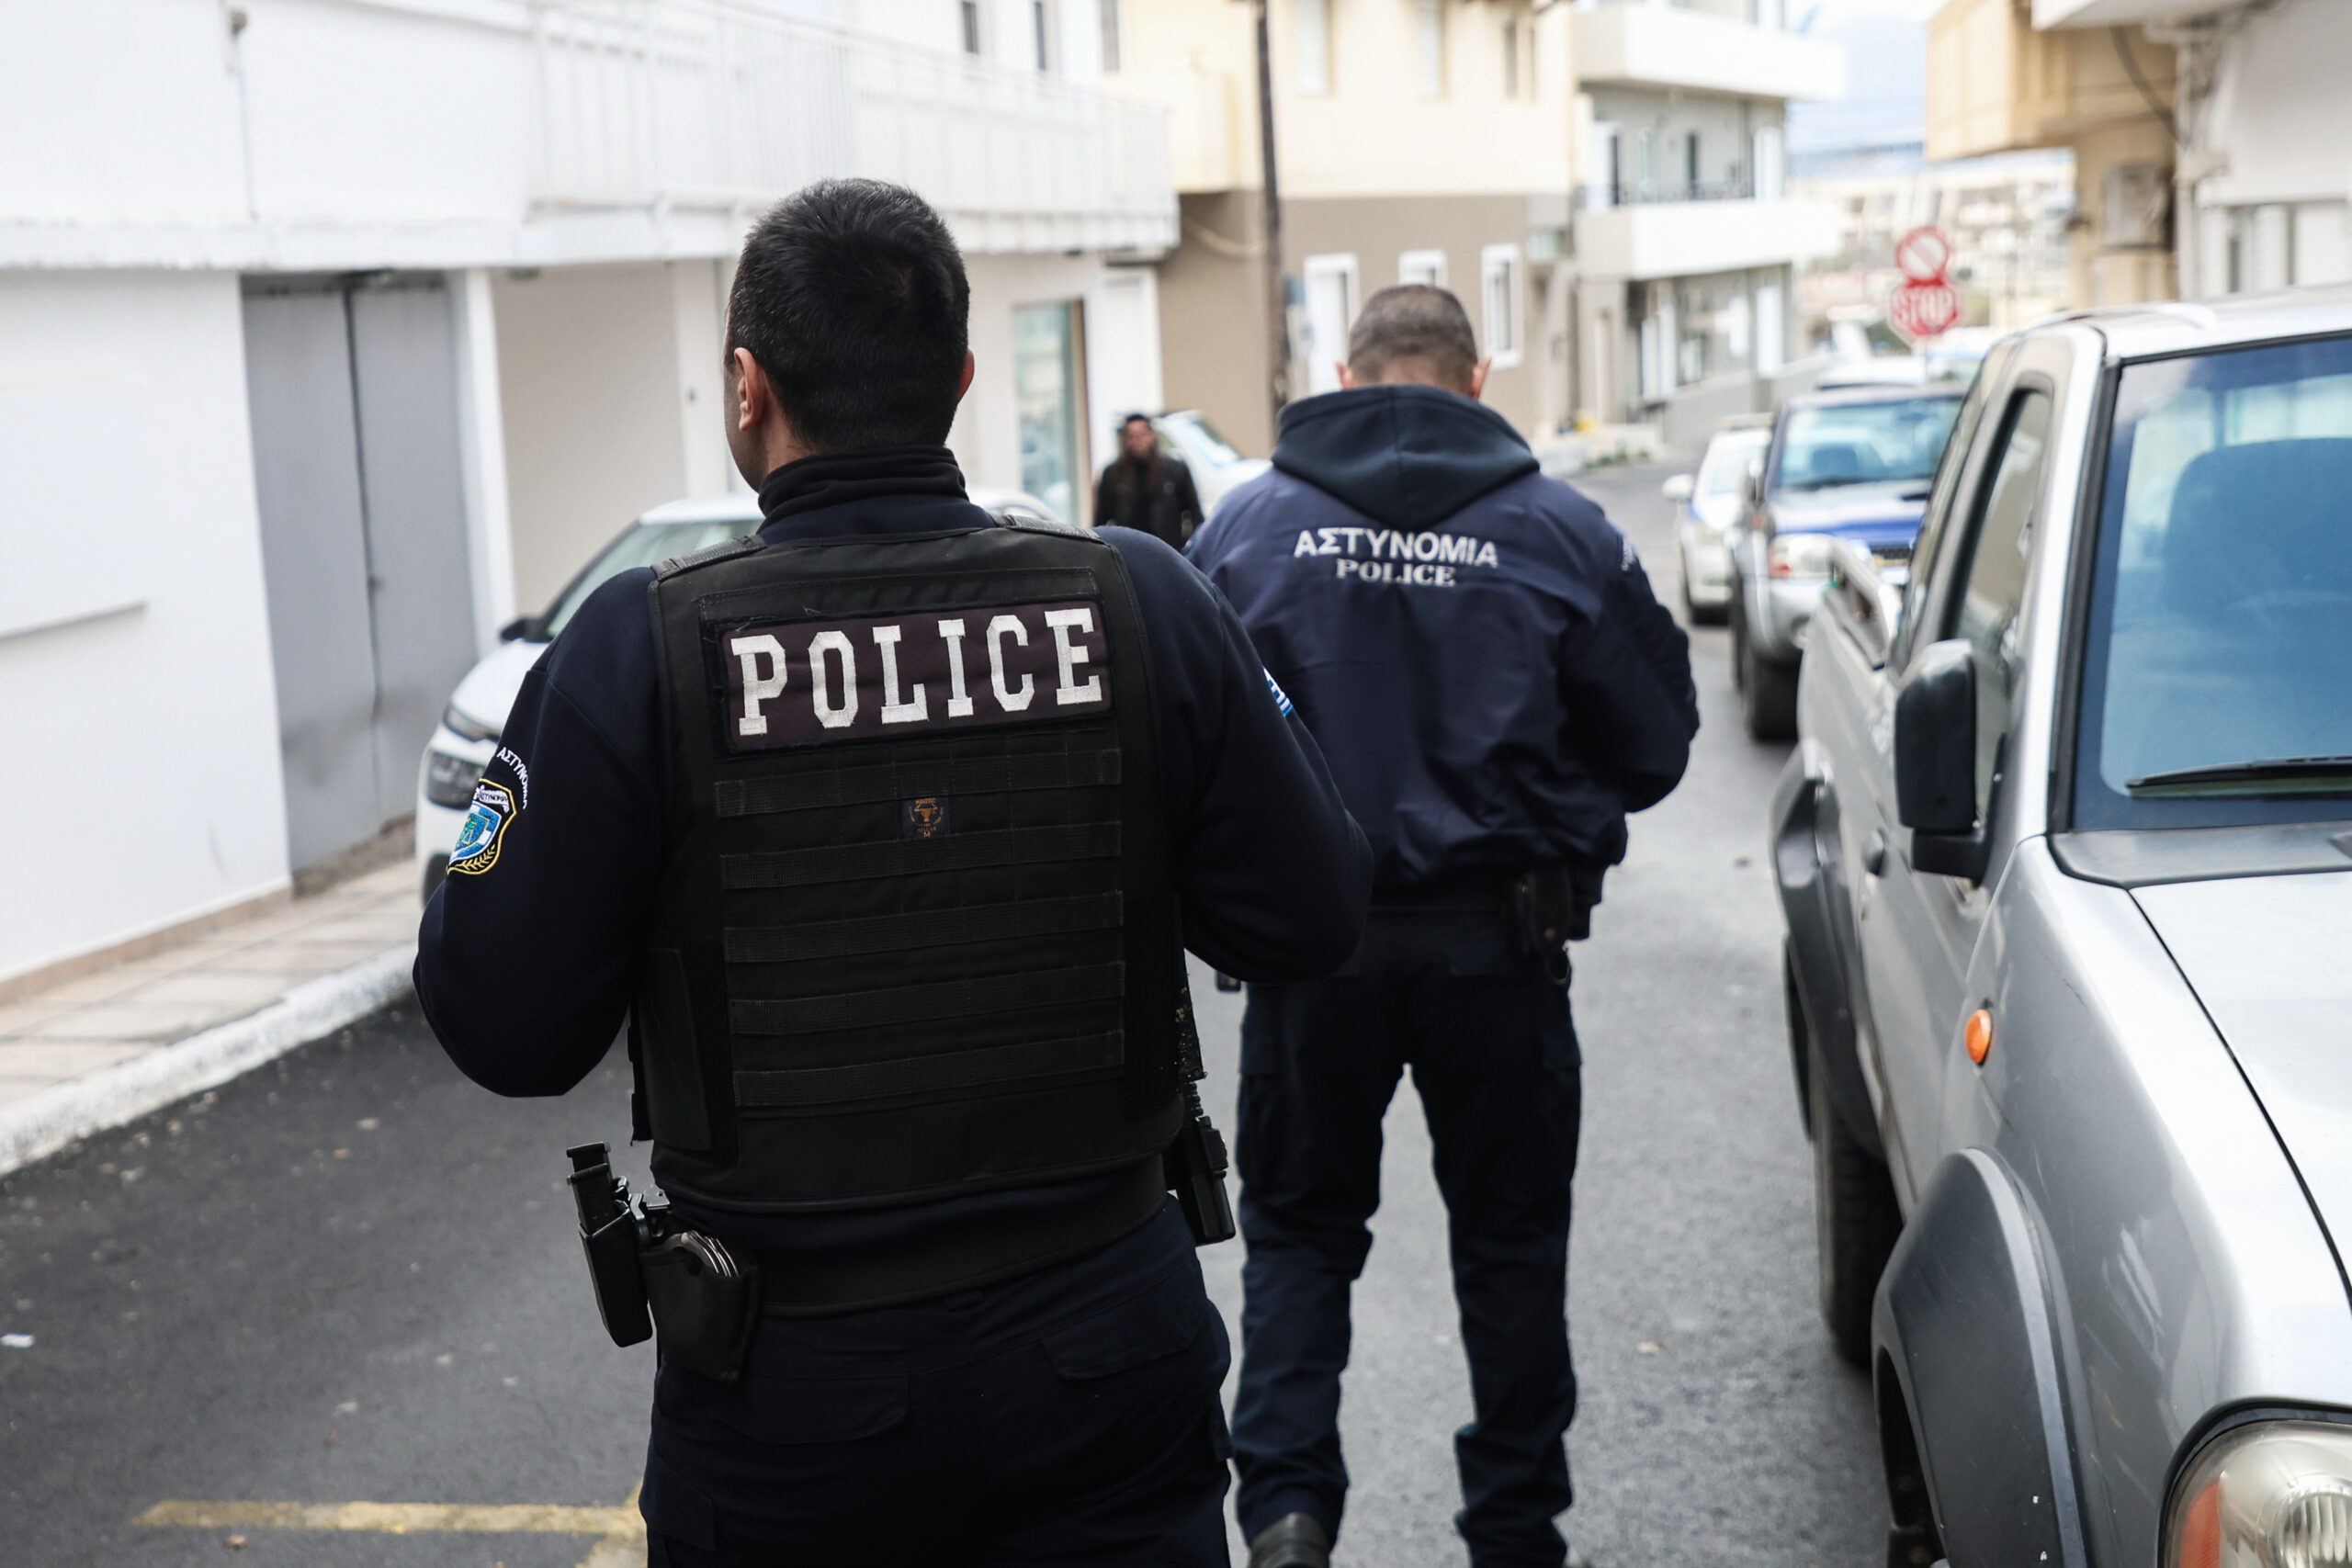 Θεσσαλονίκη -Μ. Χρυσοχοΐδης: Διακόσιοι είκοσι πέντε αστυνομικοί επανέρχονται σε μάχιμες υπηρεσίες